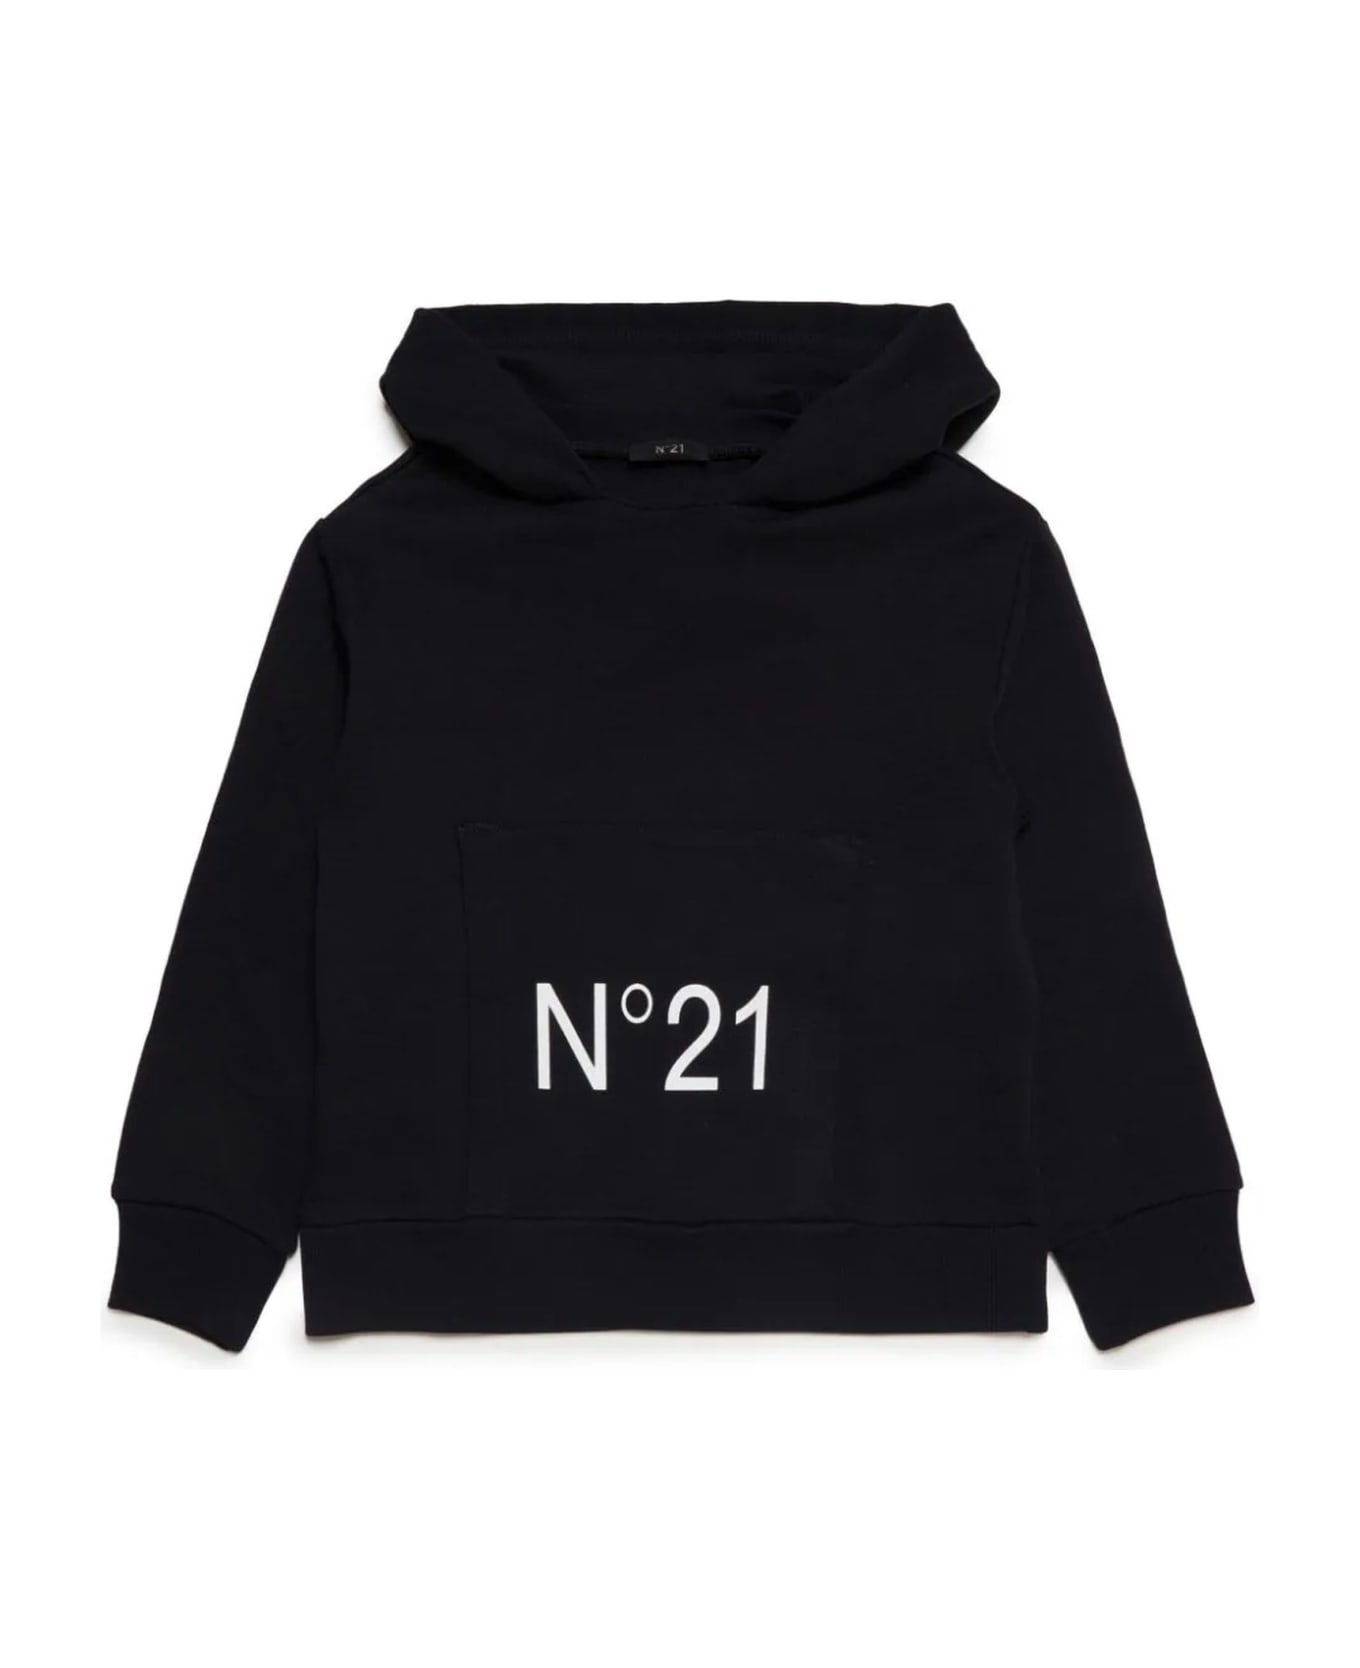 N.21 N°21 Sweaters Black - Black